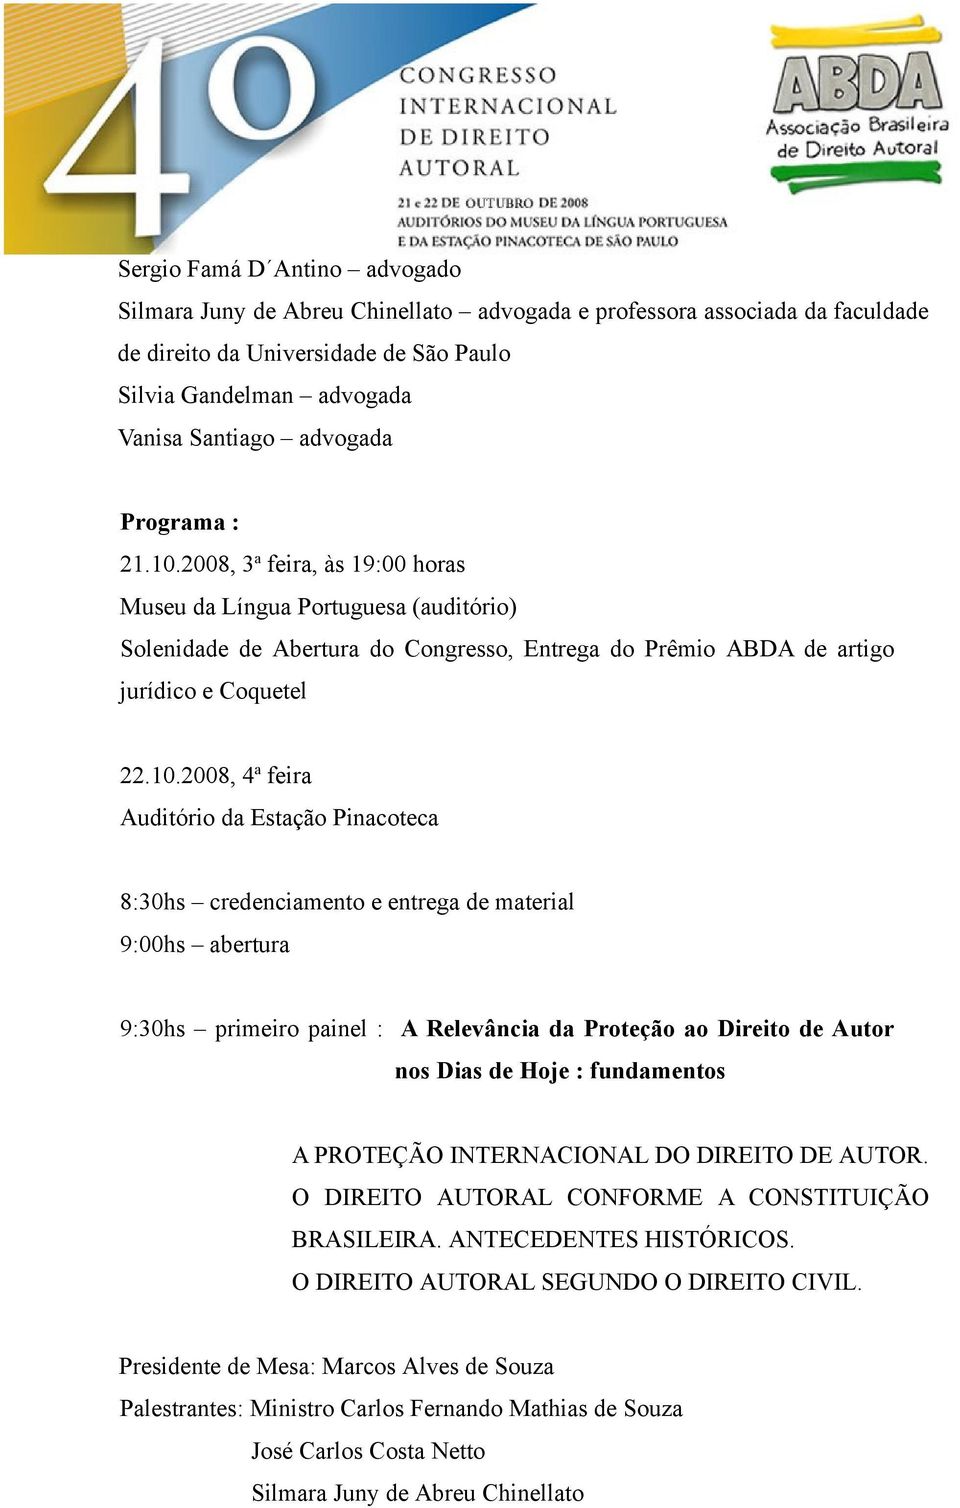 2008, 3 a feira, às 19:00 horas Museu da Língua Portuguesa (auditório) Solenidade de Abertura do Congresso, Entrega do Prêmio ABDA de artigo jurídico e Coquetel 22.10.